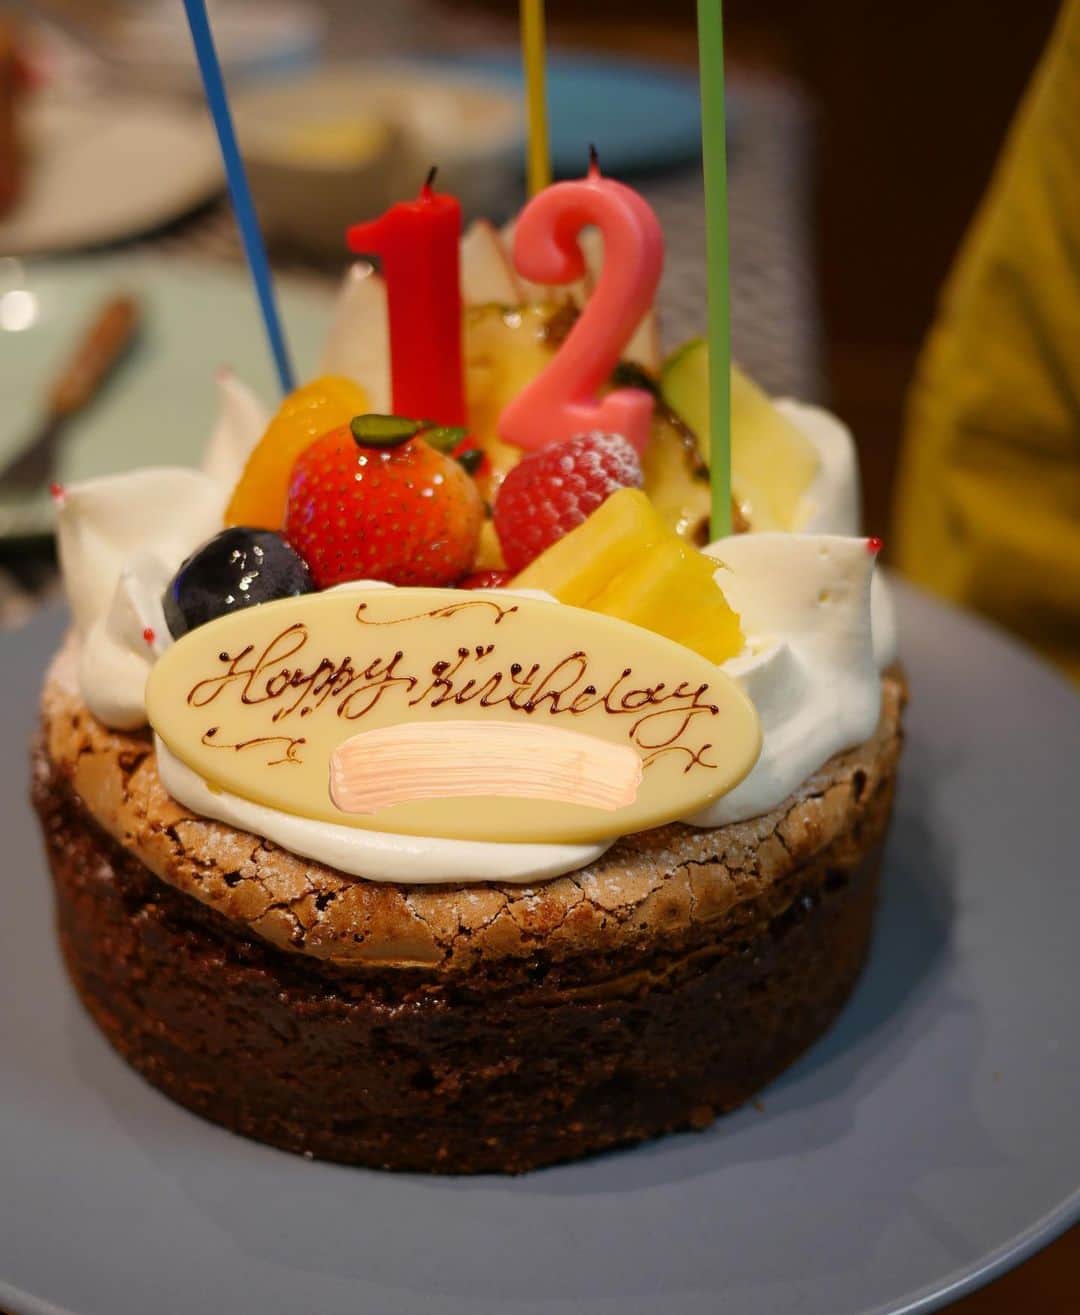 Miki Kanekoのインスタグラム：「ちょっと前だけど👦🏻の誕生日🎂 年々頑張れなくなってきて ケーキ作るのを放棄してから2年目？3年目？ 誕生日会は日曜日にやるとしても 飾り付けは誕生日当日朝にはできてる様にしてたんだけど 今年は体しんどすぎてできなかった😂🙏（結局次の日の夕方になった🎈）  今年のバルーンガーランドは 自分的に納得いかなすぎて写真載せられない👉👈  誕生日当日に飾り付けもプレゼントもなくて（プレゼントはまだ発売されてないゲームソフトだったから仕方ないんだけど） やっぱり淋しかったらしく 来年は当日にしてほしいって言われてしまった😂  まぁでも後日義両親と義姉家族と中華街でランチして合同誕生日会してもらえたし その後いとこのお兄ちゃんと色々遊びに行けたし なんやかんやで楽しく過ごせたのでは👦🏻  最近は誕プレのスーパーマリオブラザーズワンダー一緒にやらされてます☺️🎮 意外と楽しいけどー  .  来年の自分へ✉️  ⚪︎風船は早めに買う事（毎年言ってる） ⚪︎風船の色は3色まで（今年くすみカラー混ぜたら微妙になった） ⚪︎風船大きく膨らませすぎないこと ⚪︎誕生日当日には飾り付けする事 （平日朝が無理なら夕方までに） ⚪︎プレゼントもできるだけ当日に何かしら用意する事（目録で良い笑）  来年の自分ファイト〜😇  .」